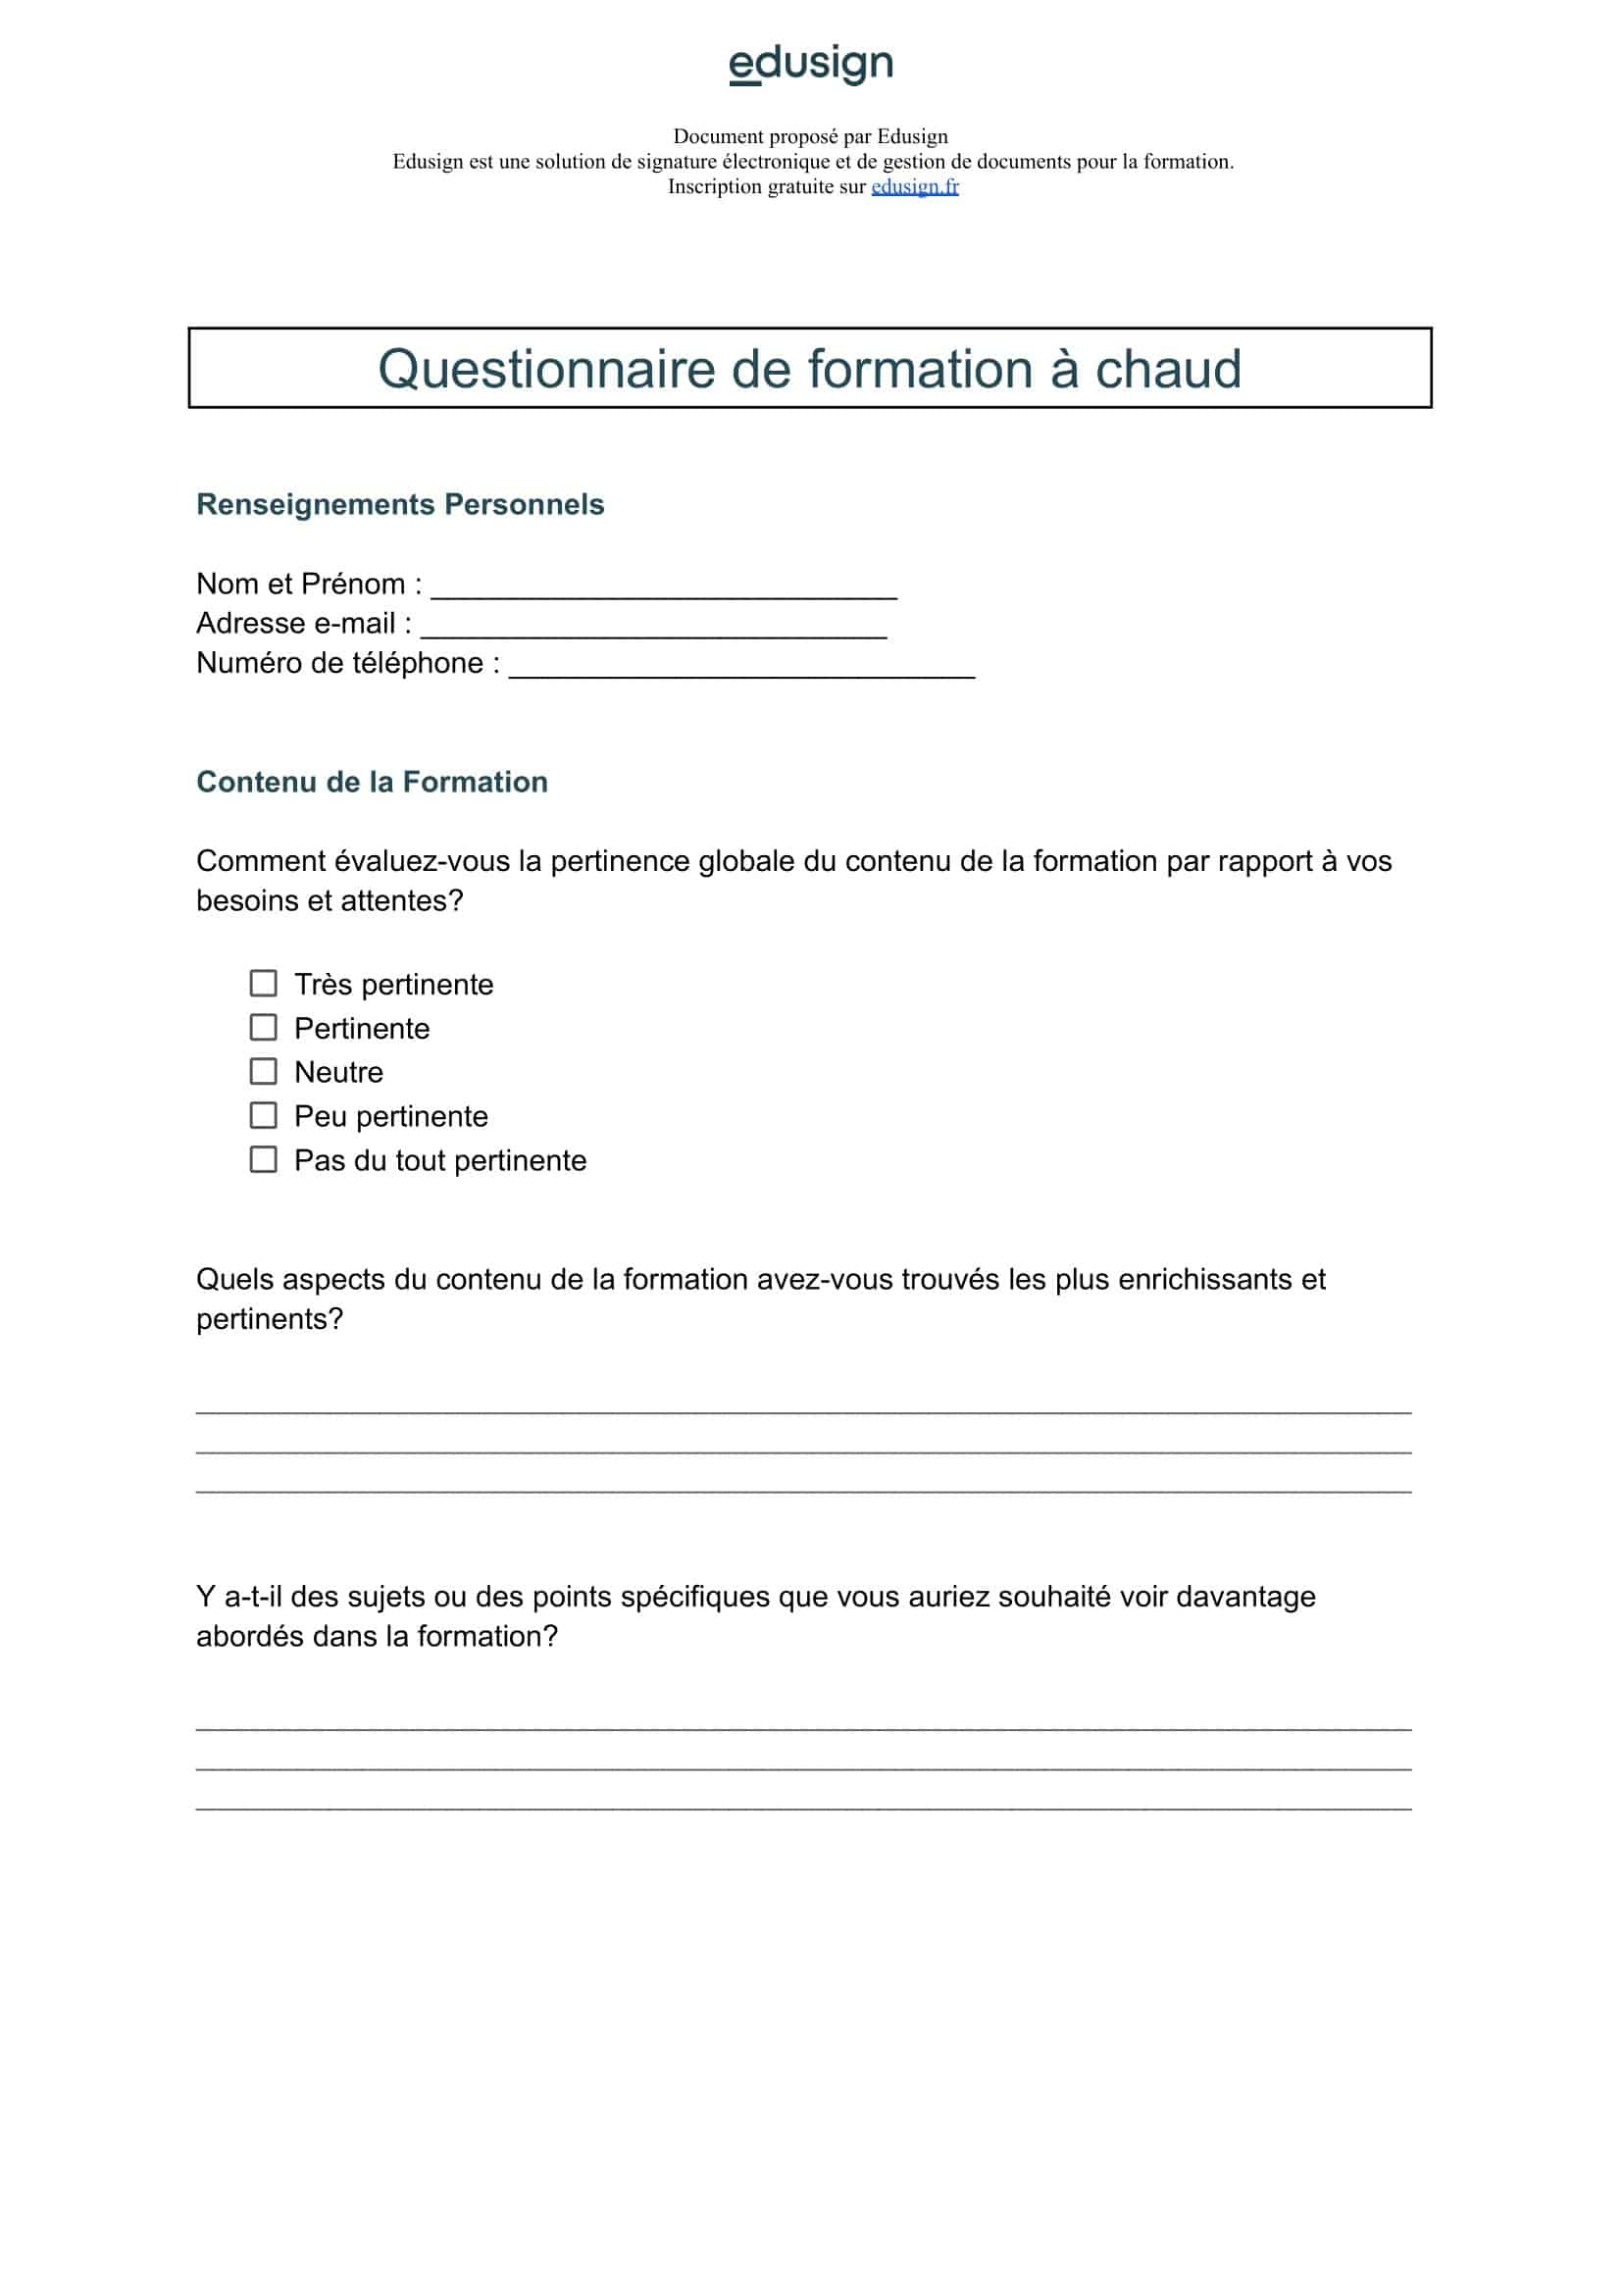 Illustration Modele Questionnaire de formation à chaud à copier ou télécharger en pdf et word